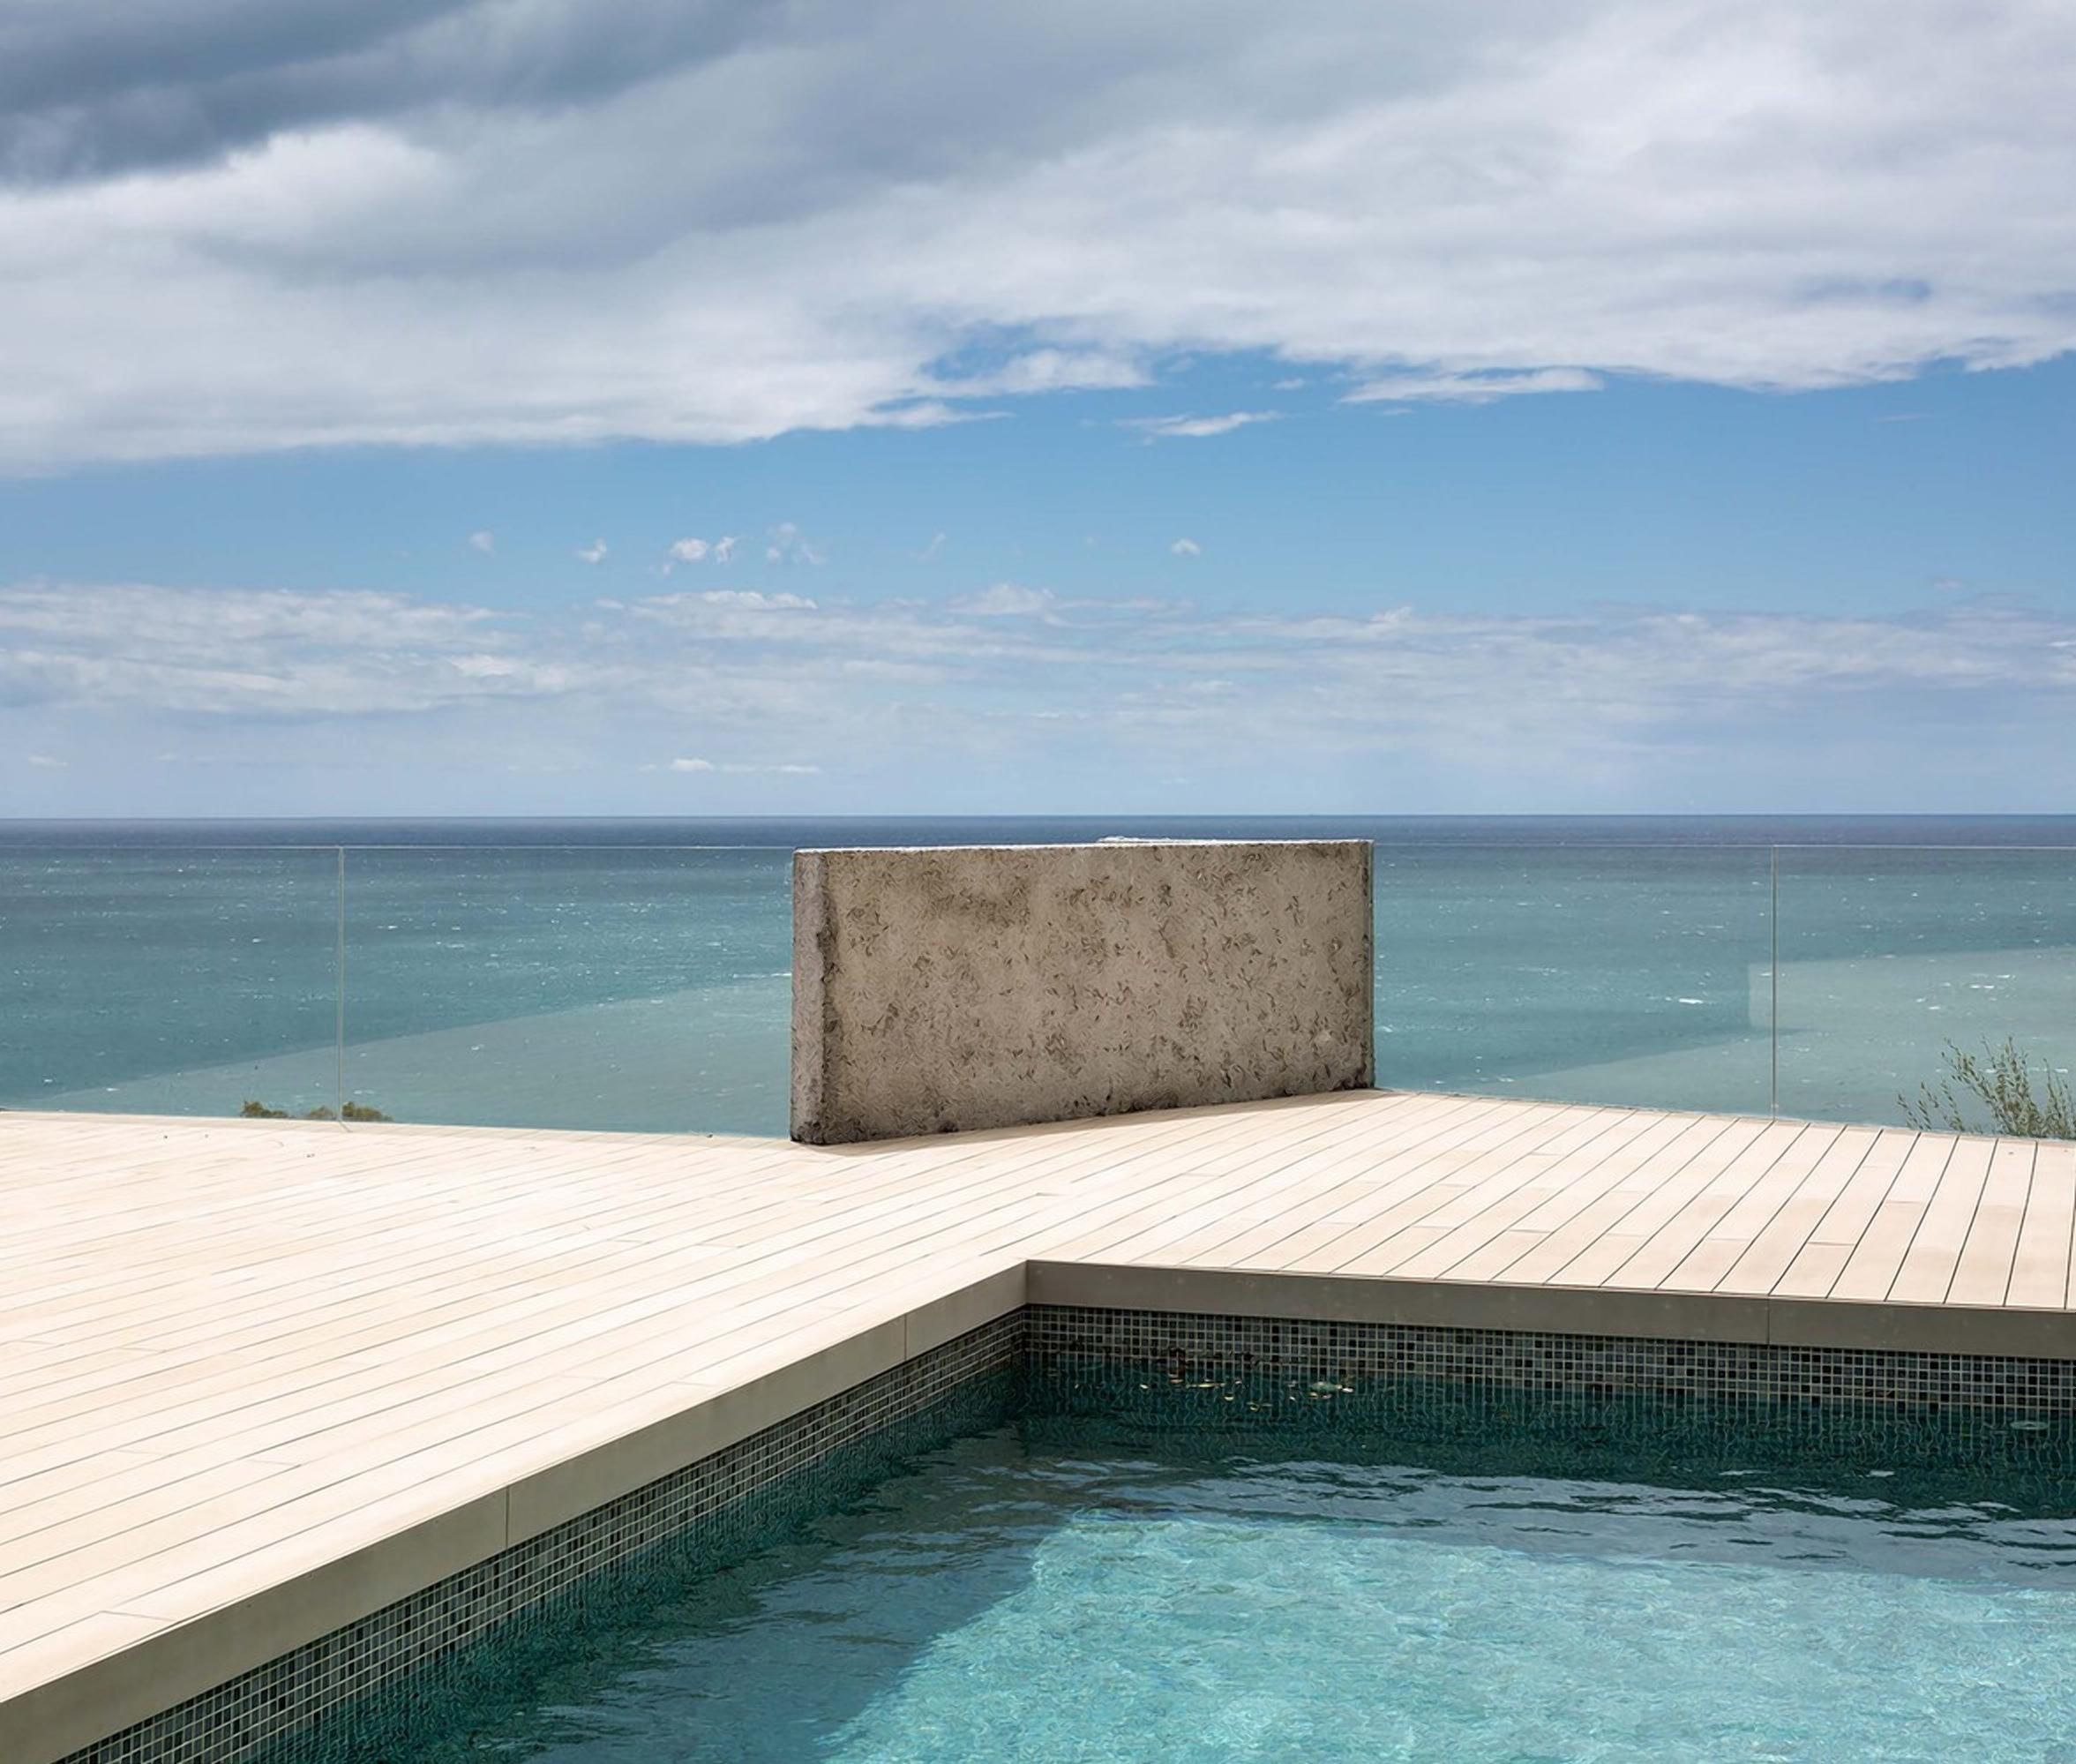 Казка на березі моря: апартаменти в Іспанії, про які можна лише мріяти - 17 октября 2021 - Дизайн 24